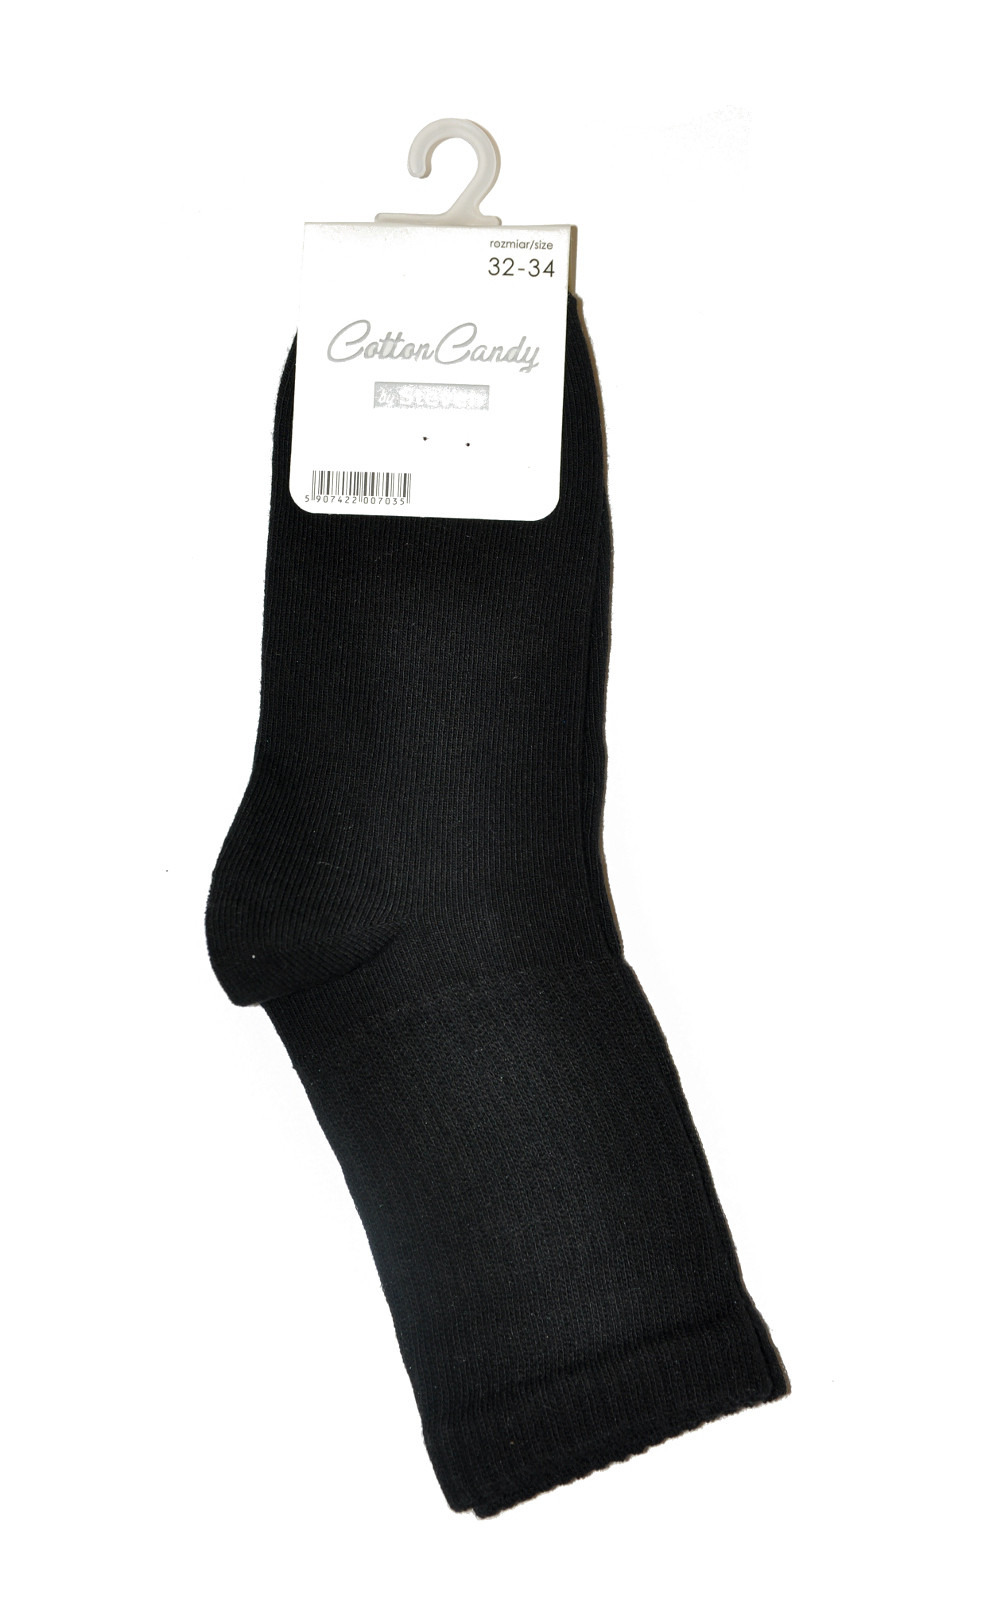 Pánské ponožky Steven hladké art.014 černá 26-28